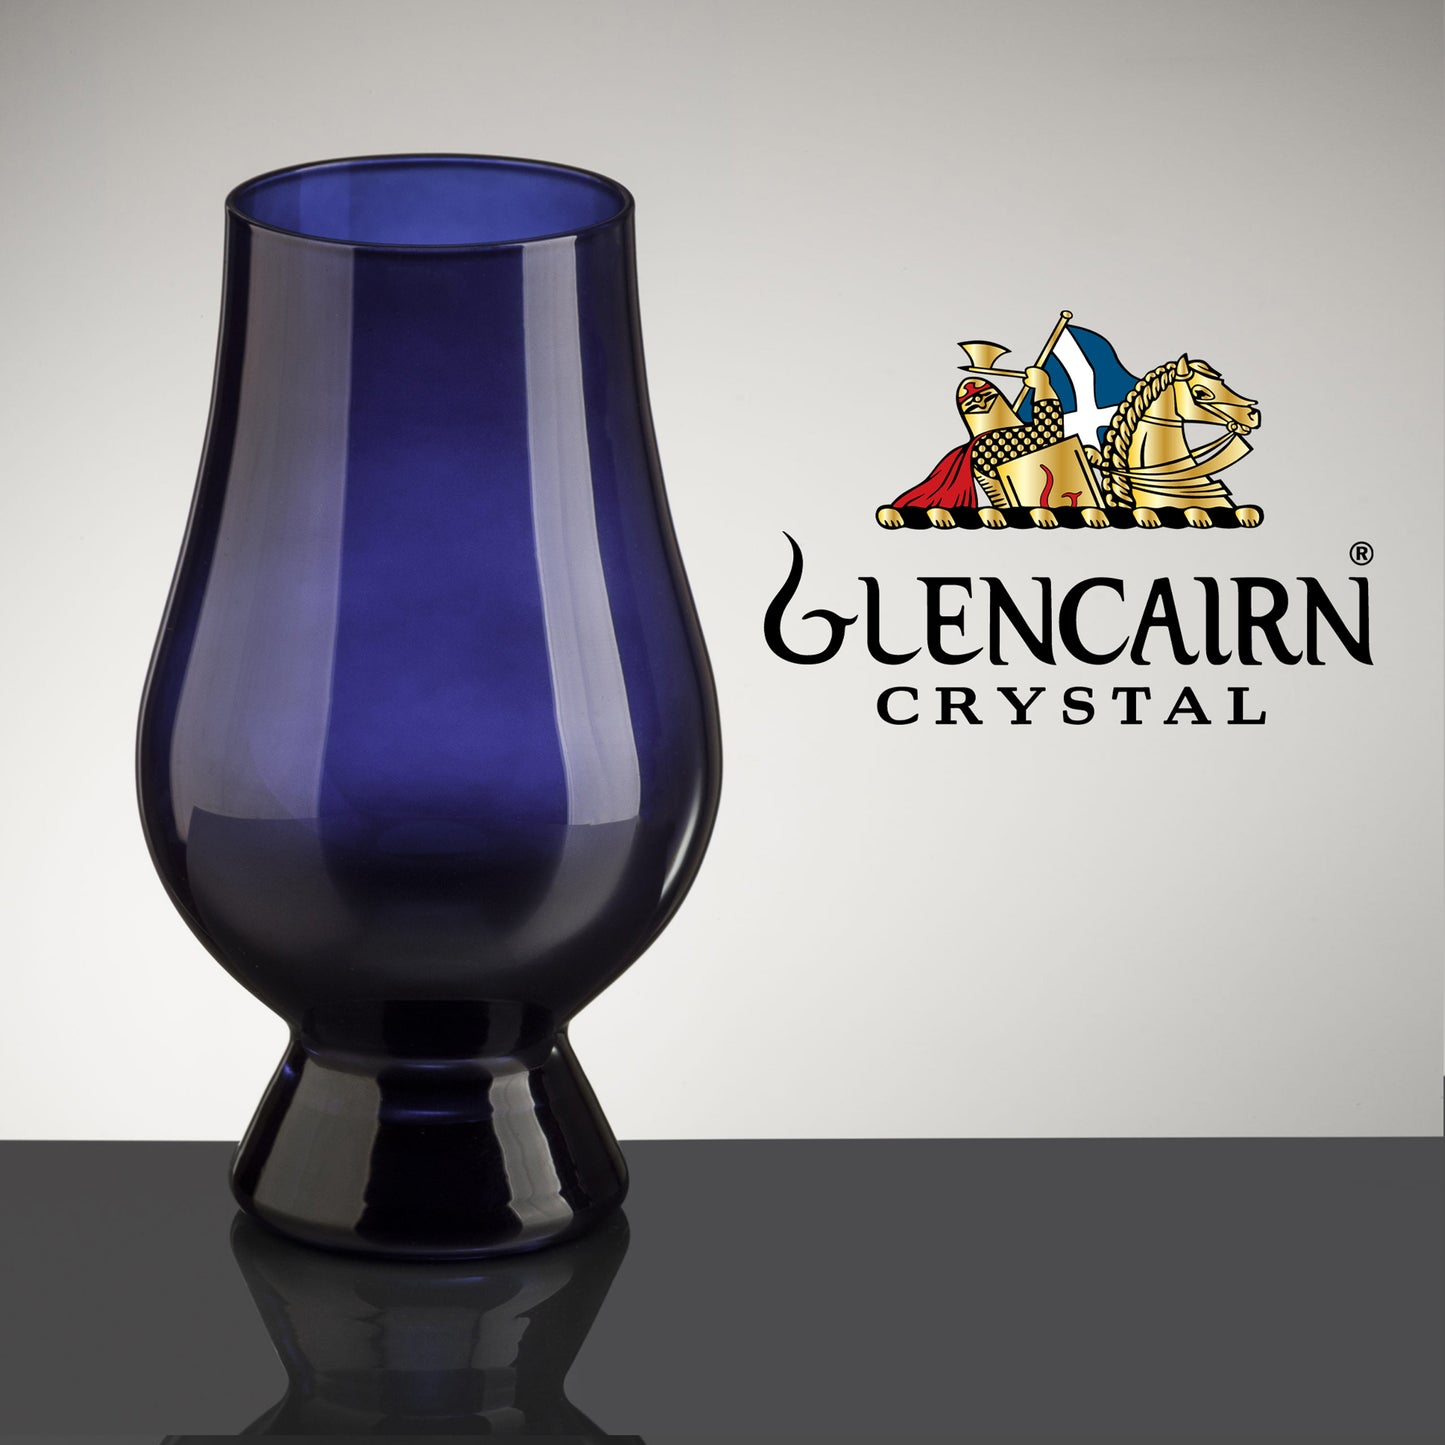 The Blue Glencairn Whisky Glass, Official Blind Tasting Crystal Whiskey Glassware